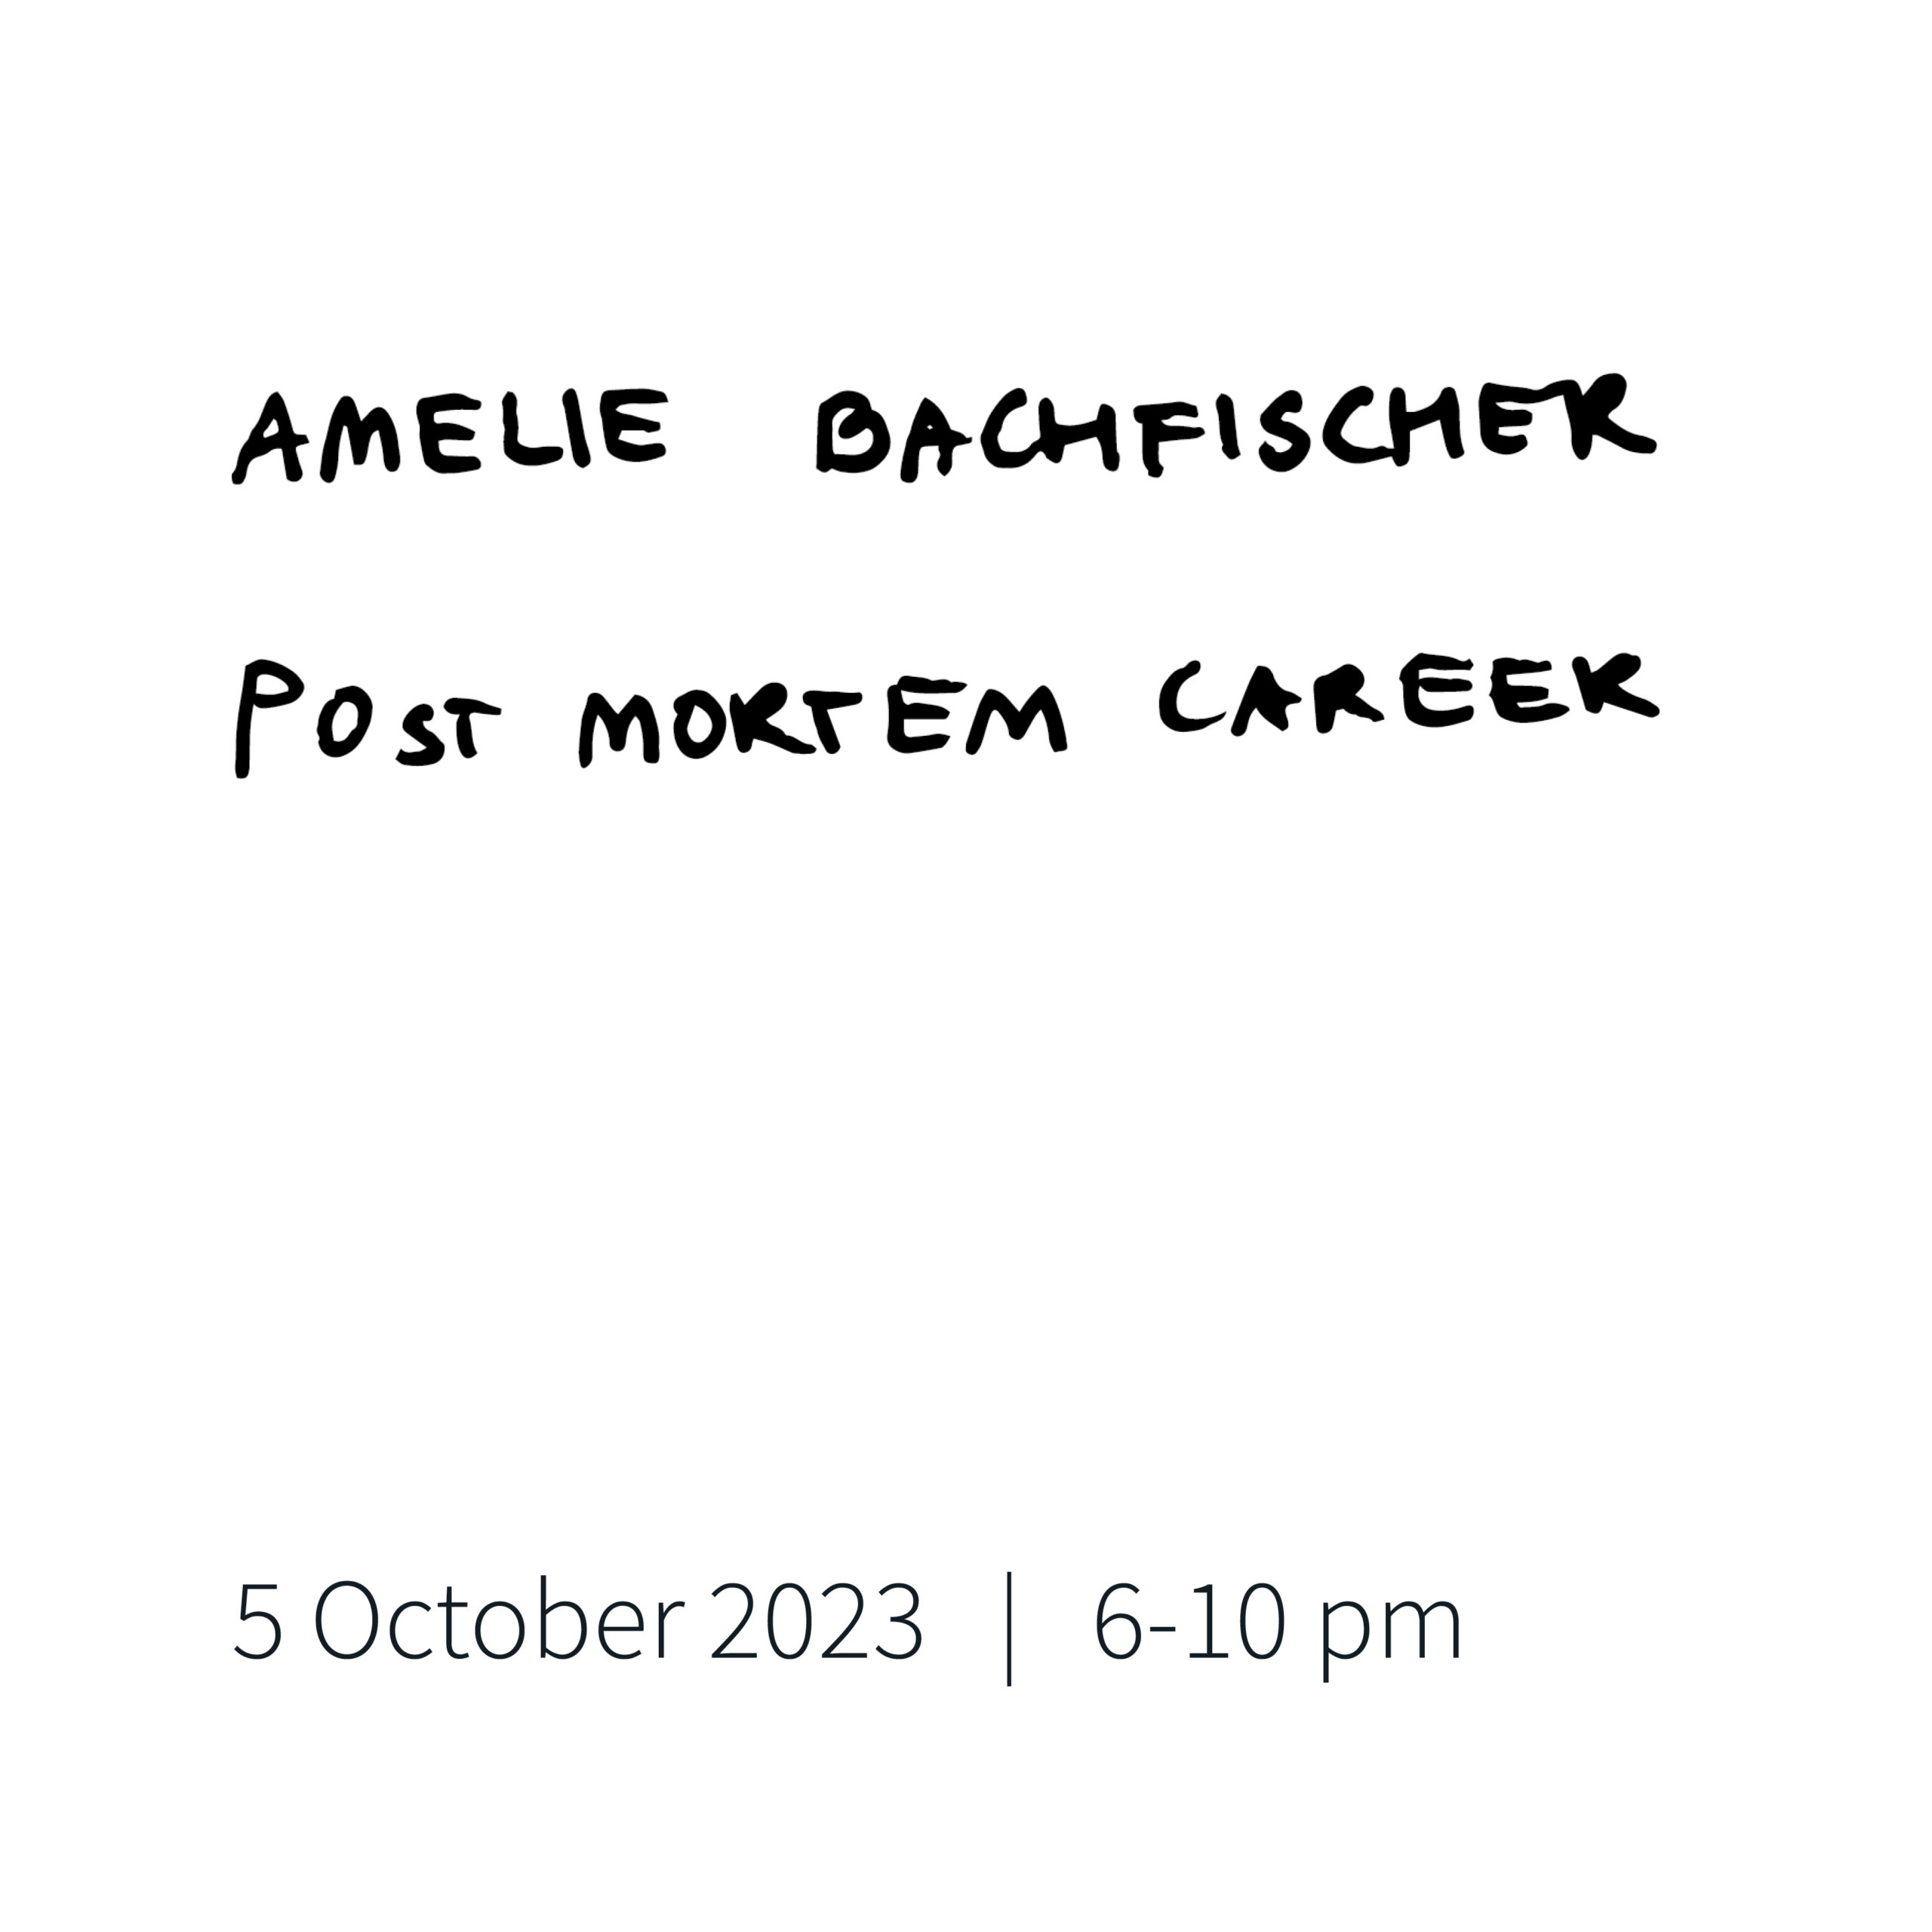 Amelie Bachfischer - Post Mortem Career